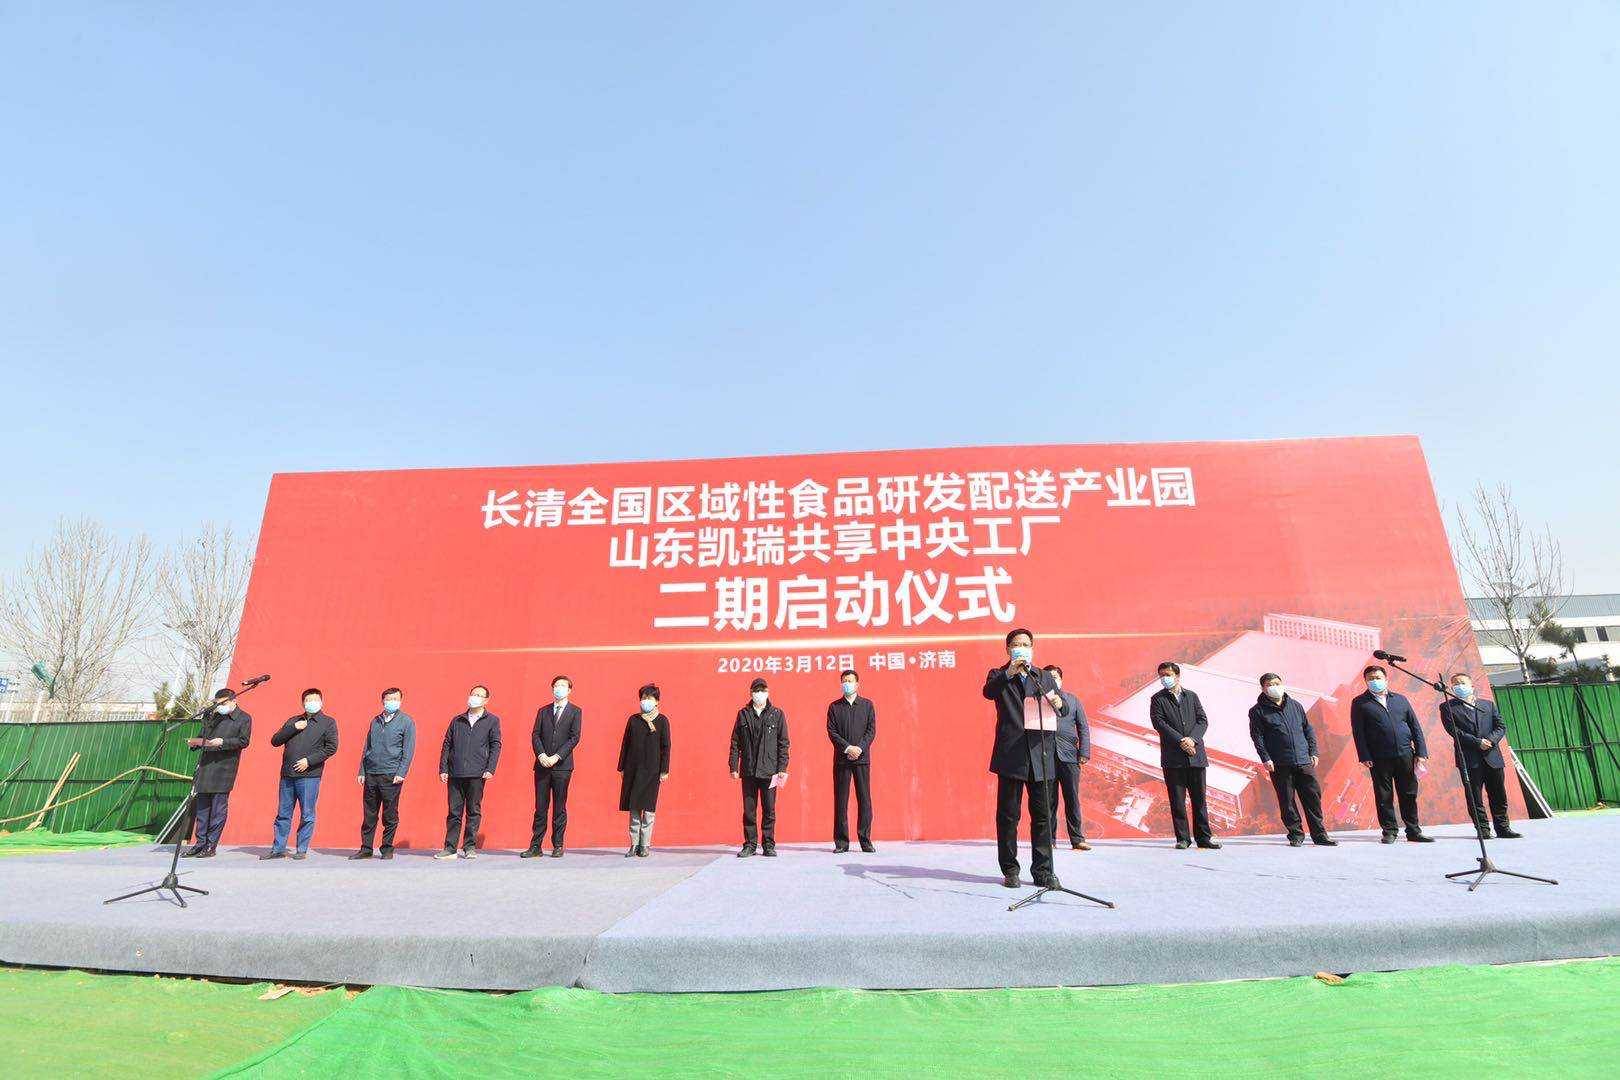 30秒直击发布会丨济南长清区今年已开工重点项目100个 完成投资100亿